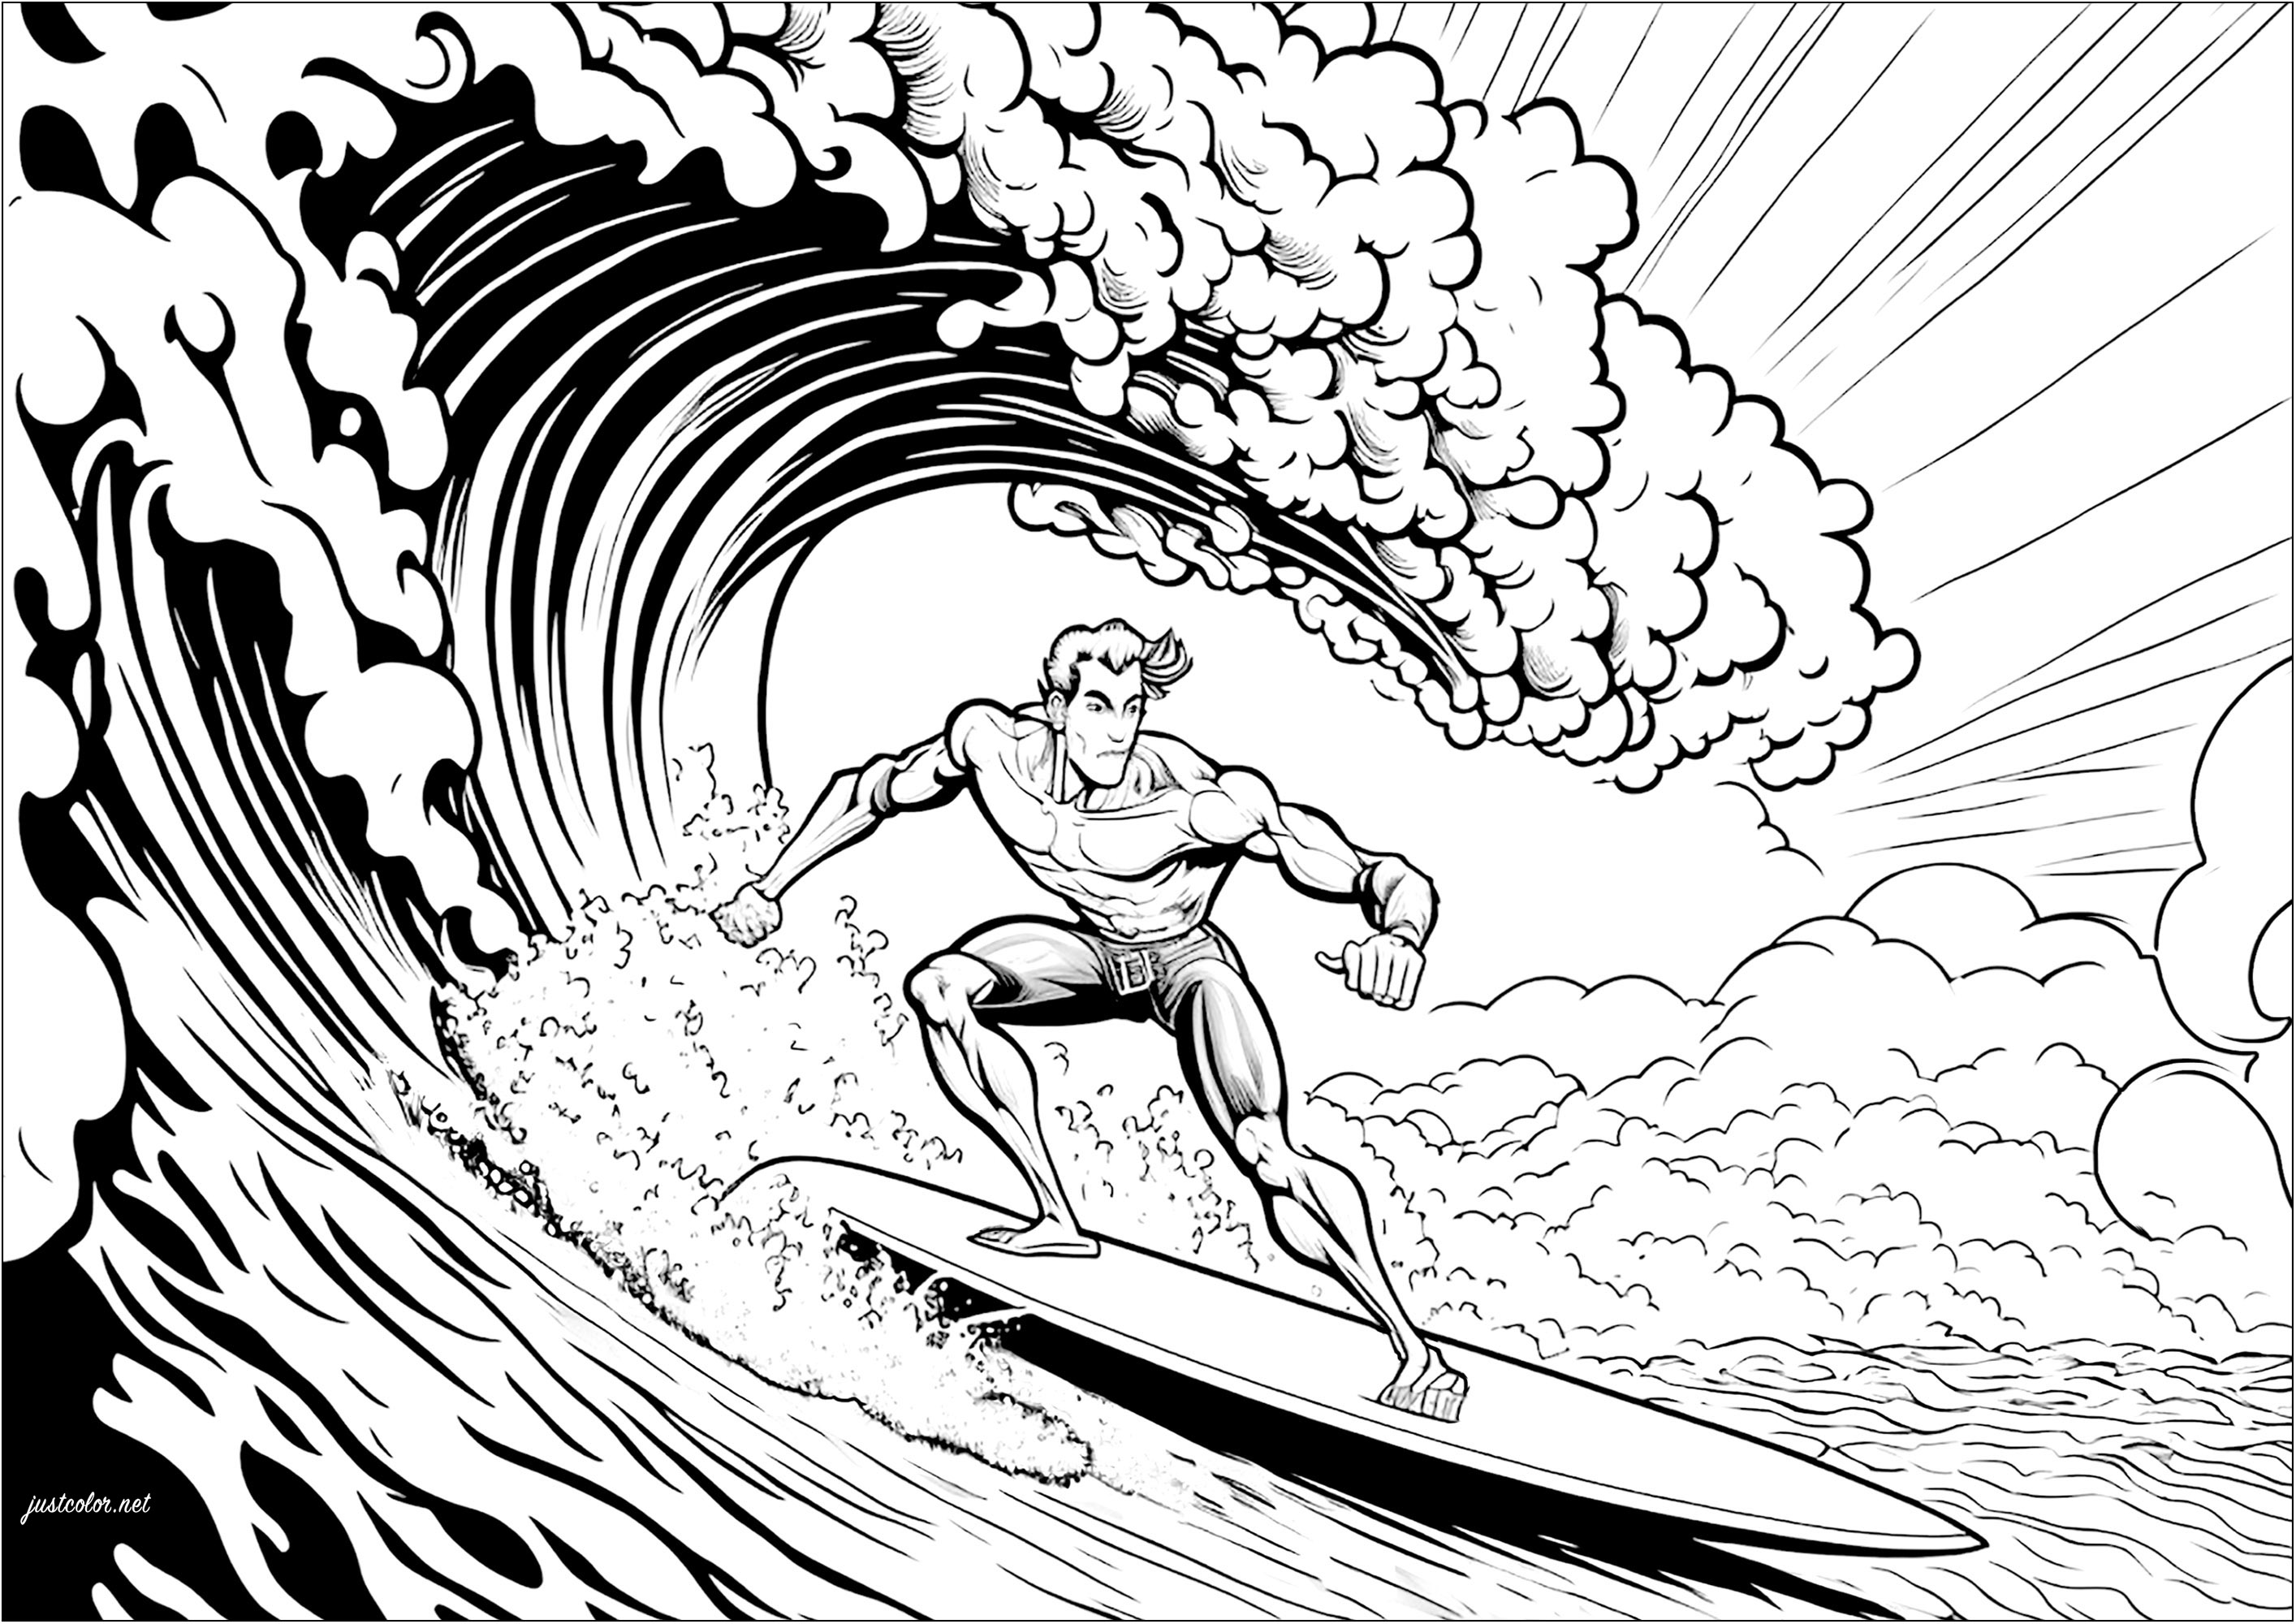 Reite die Wellen mit dieser lustigen Surfer-Malvorlage!. Mit dieser Surfer vor einer furchterregenden Welle, ist diese Malvorlage perfekt für diejenigen, die das Meer, den Ozean und alle Wassersportarten lieben.